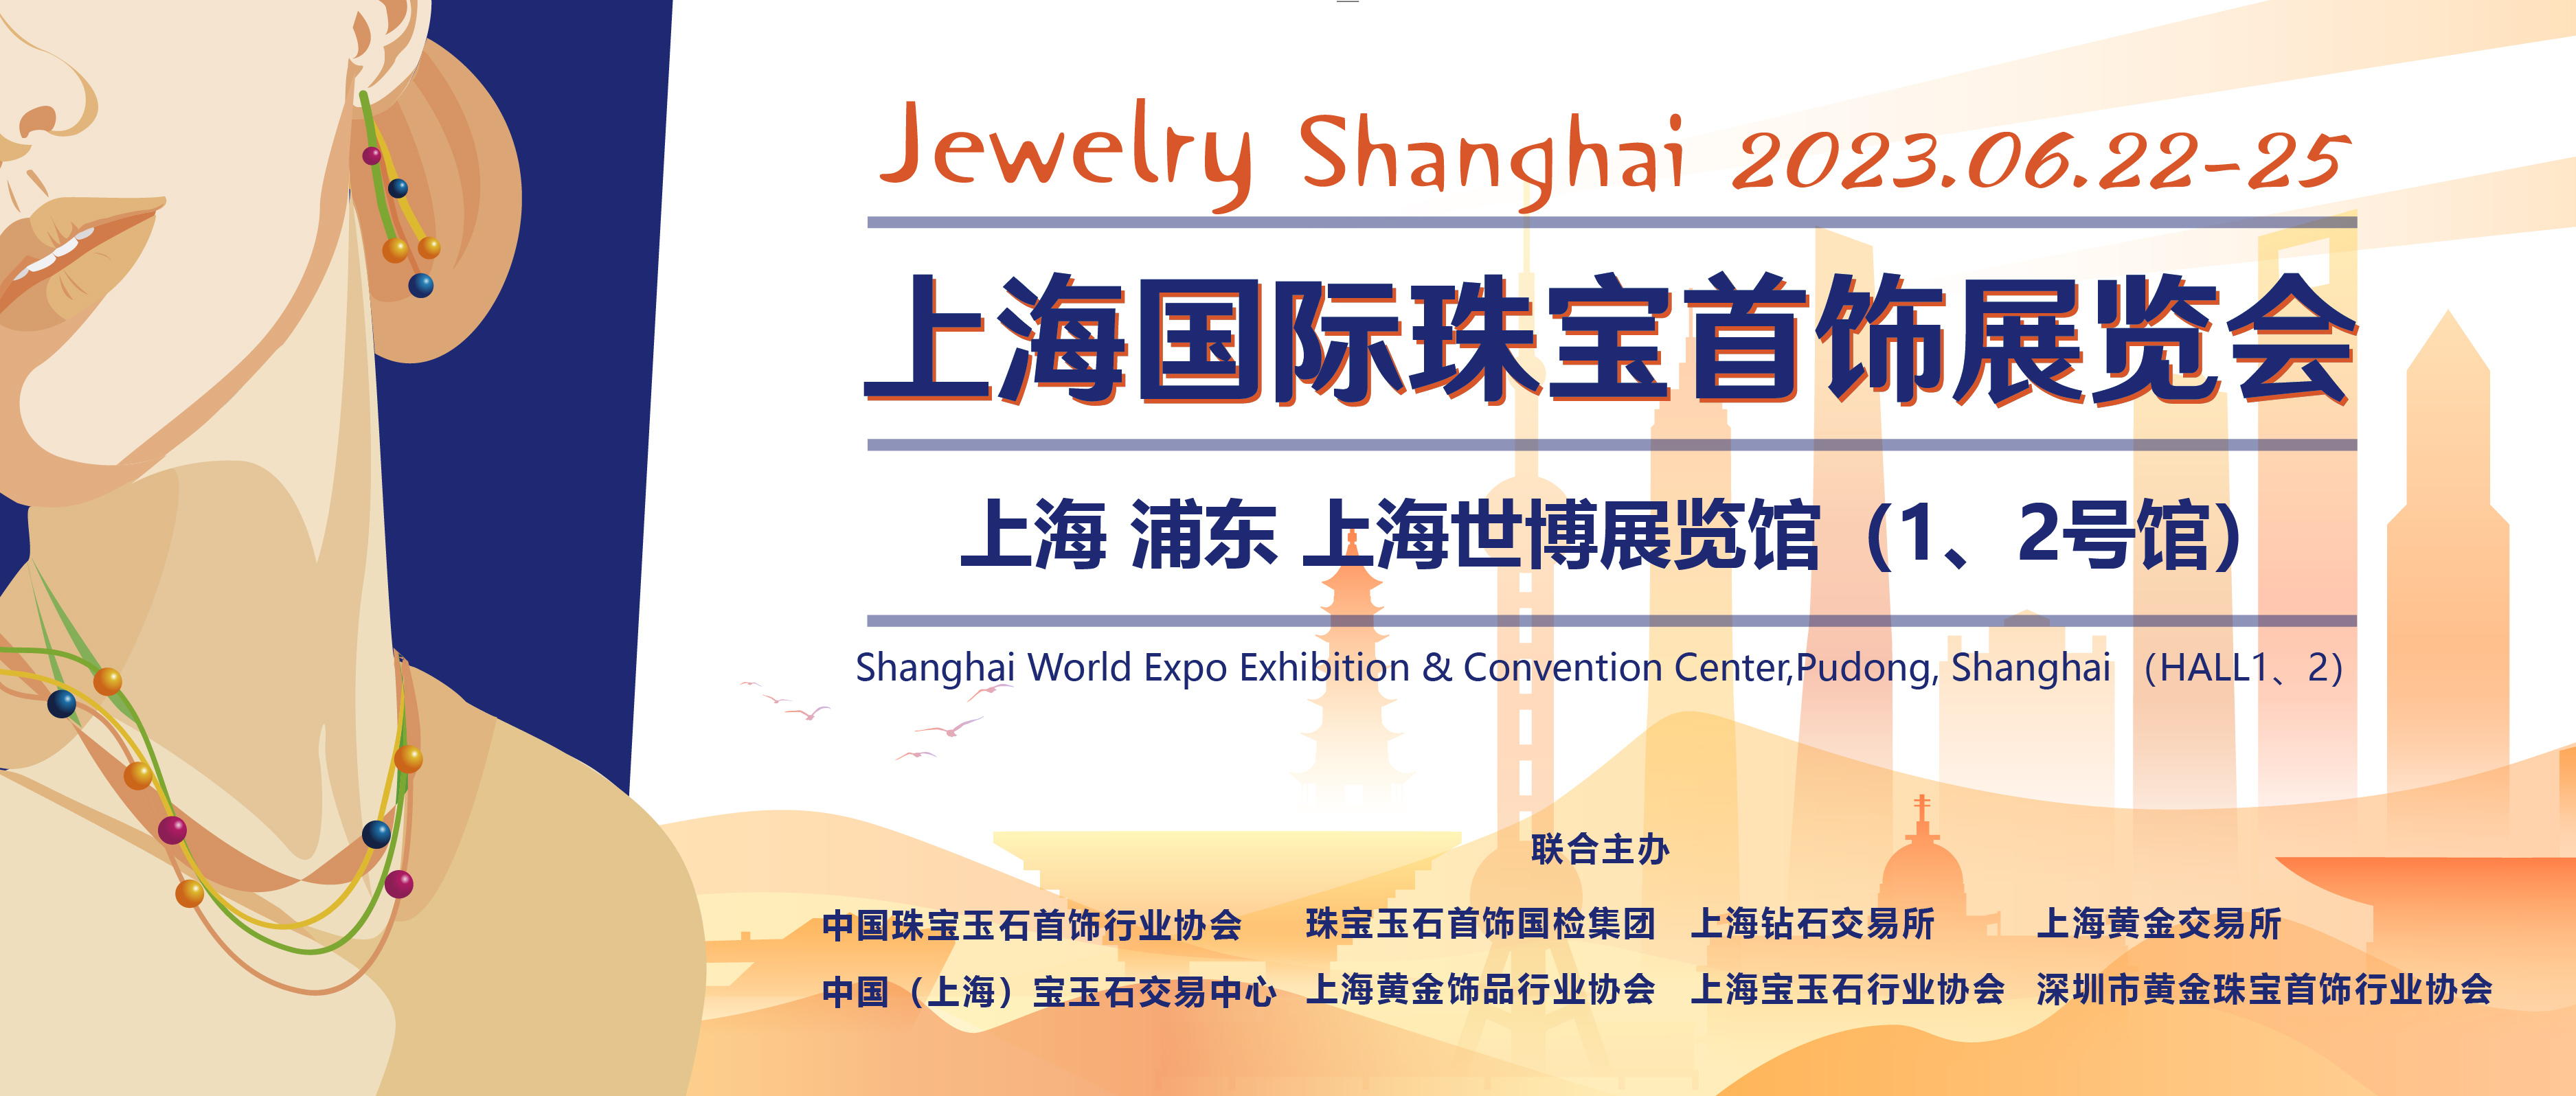 集结全球珠宝 接轨国际风尚 2023上海国际珠宝首饰展览会即将开幕